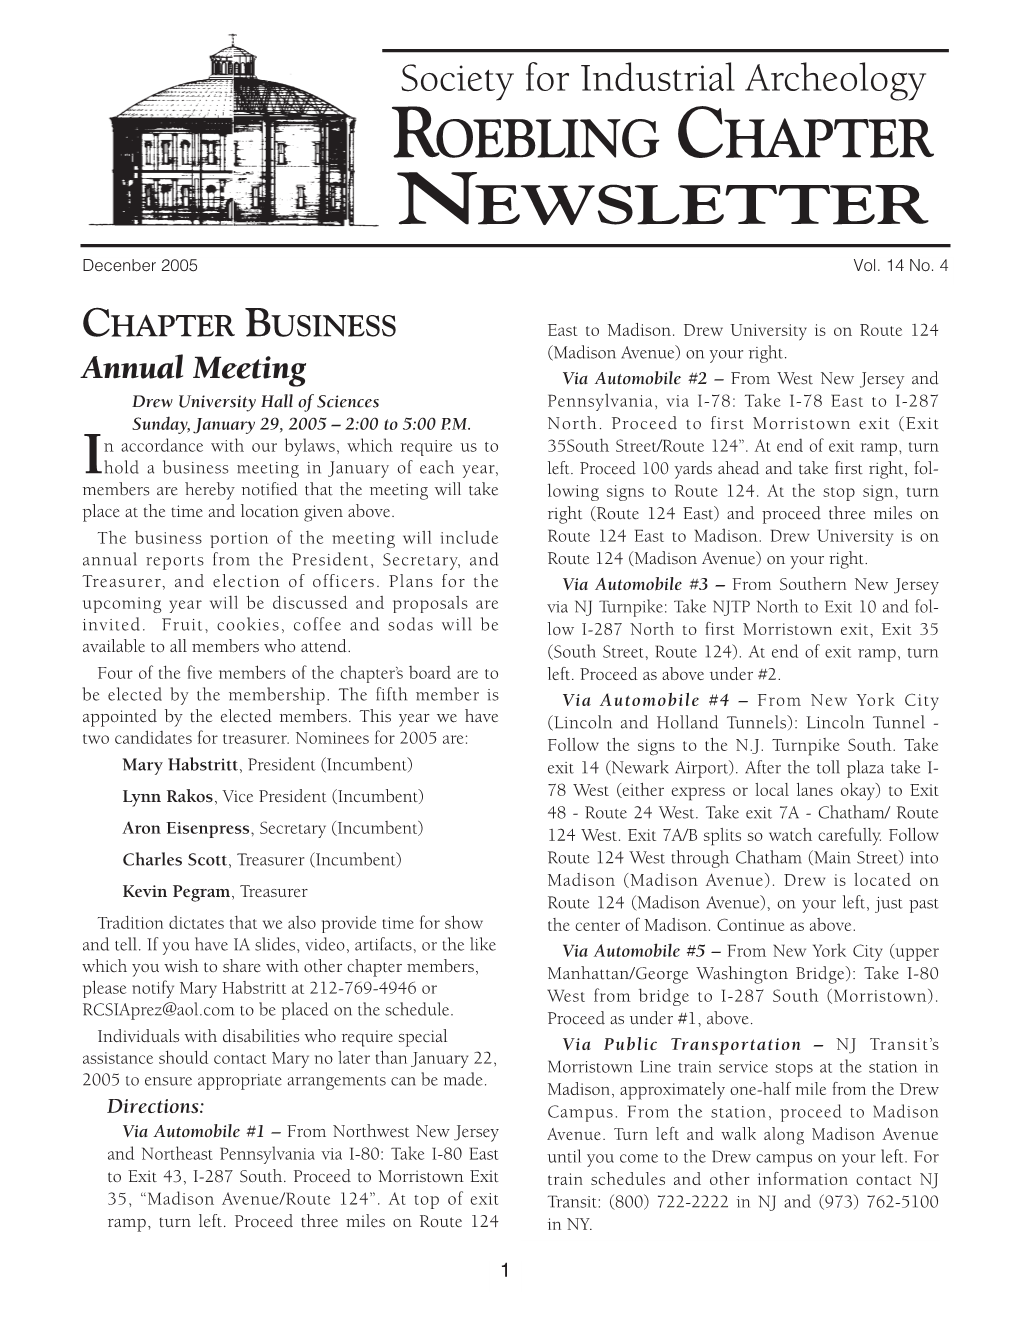 Roebling Chap. Newsletter, 14-4 December 2005